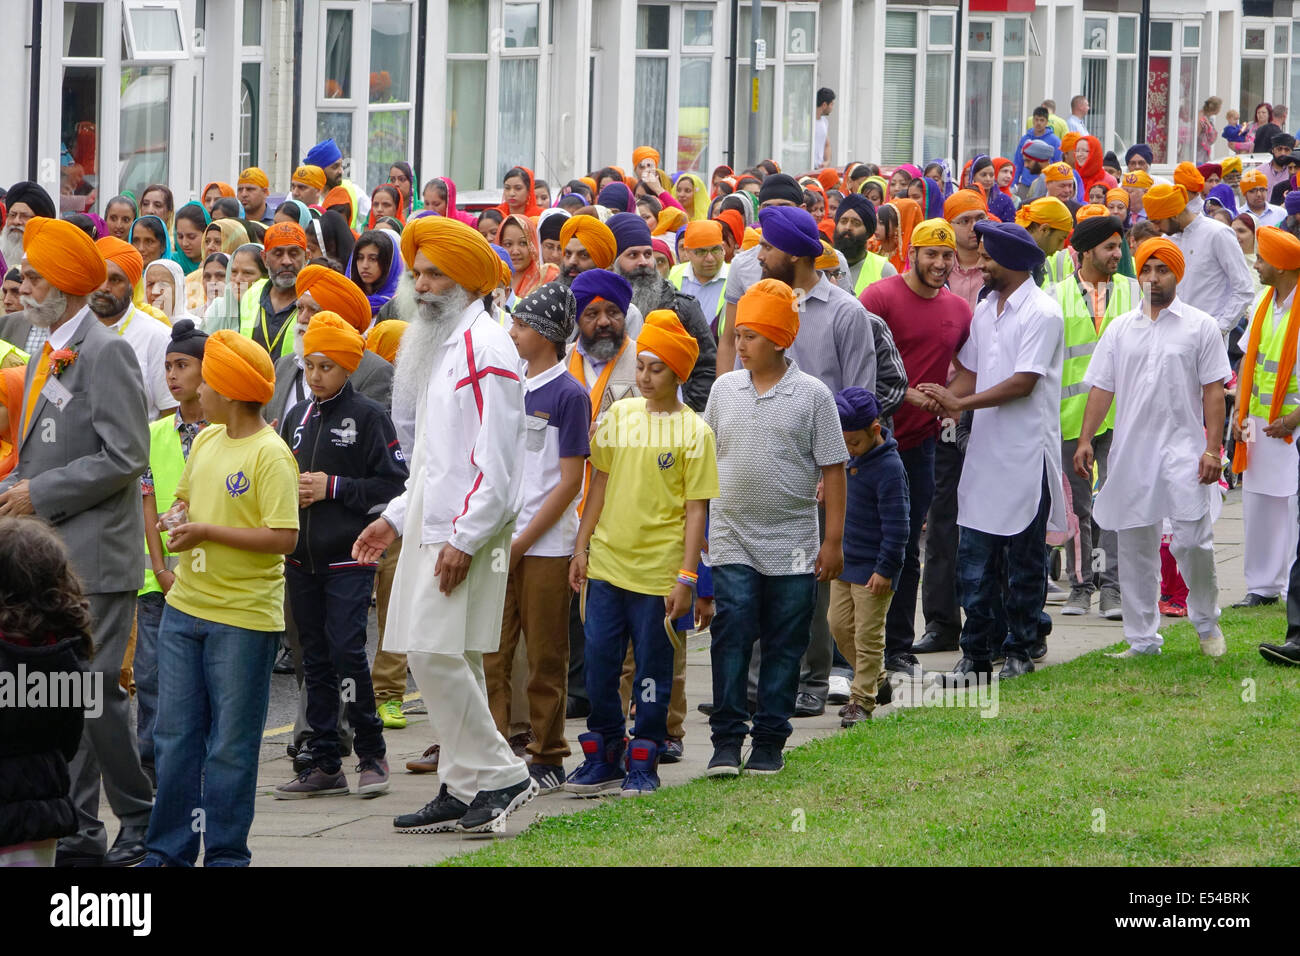 Middlesbrough, Regno Unito. Il 20 luglio, 2014. L annuale Nagar Kirtan Parade celebra la cultura Sikh nel nord-est dell' Inghilterra ha avuto luogo in Middlesbrough Cleveland UK oggi è domenica 20 luglio. Il corteo è guidato da cinque zafferano derubato gli uomini che portano un galleggiante che porta il Guru Granth Sahib i sikh la Sacra Scrittura. Membri della processione è a piedi nudi in ossequio alla scrittura così visualizzato. Essi sono preceduti da spazzatrici pulizia della strada. Questa immagine mostra i sikh ordinaria seguendo il galleggiante sul retro della sfilata. Credito: Pietro Giordano NE/Alamy Live News Foto Stock